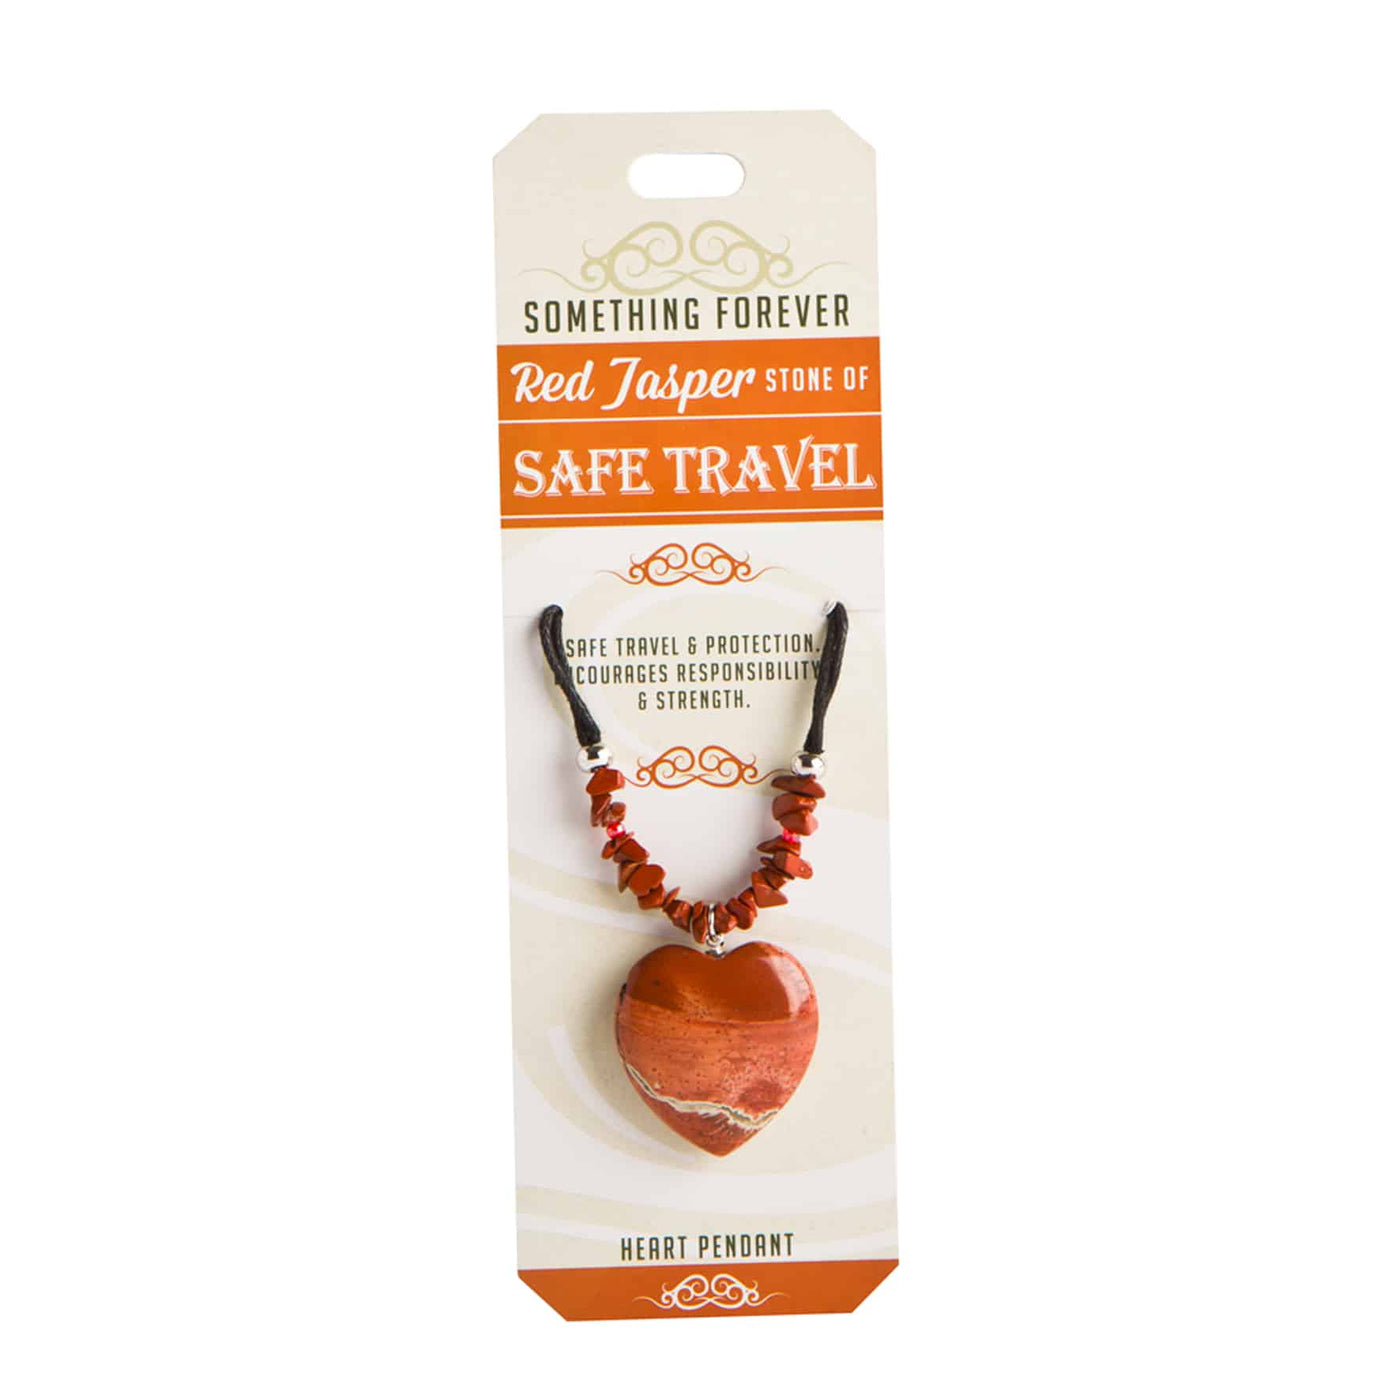 red jasper heart pendant good for safe travels